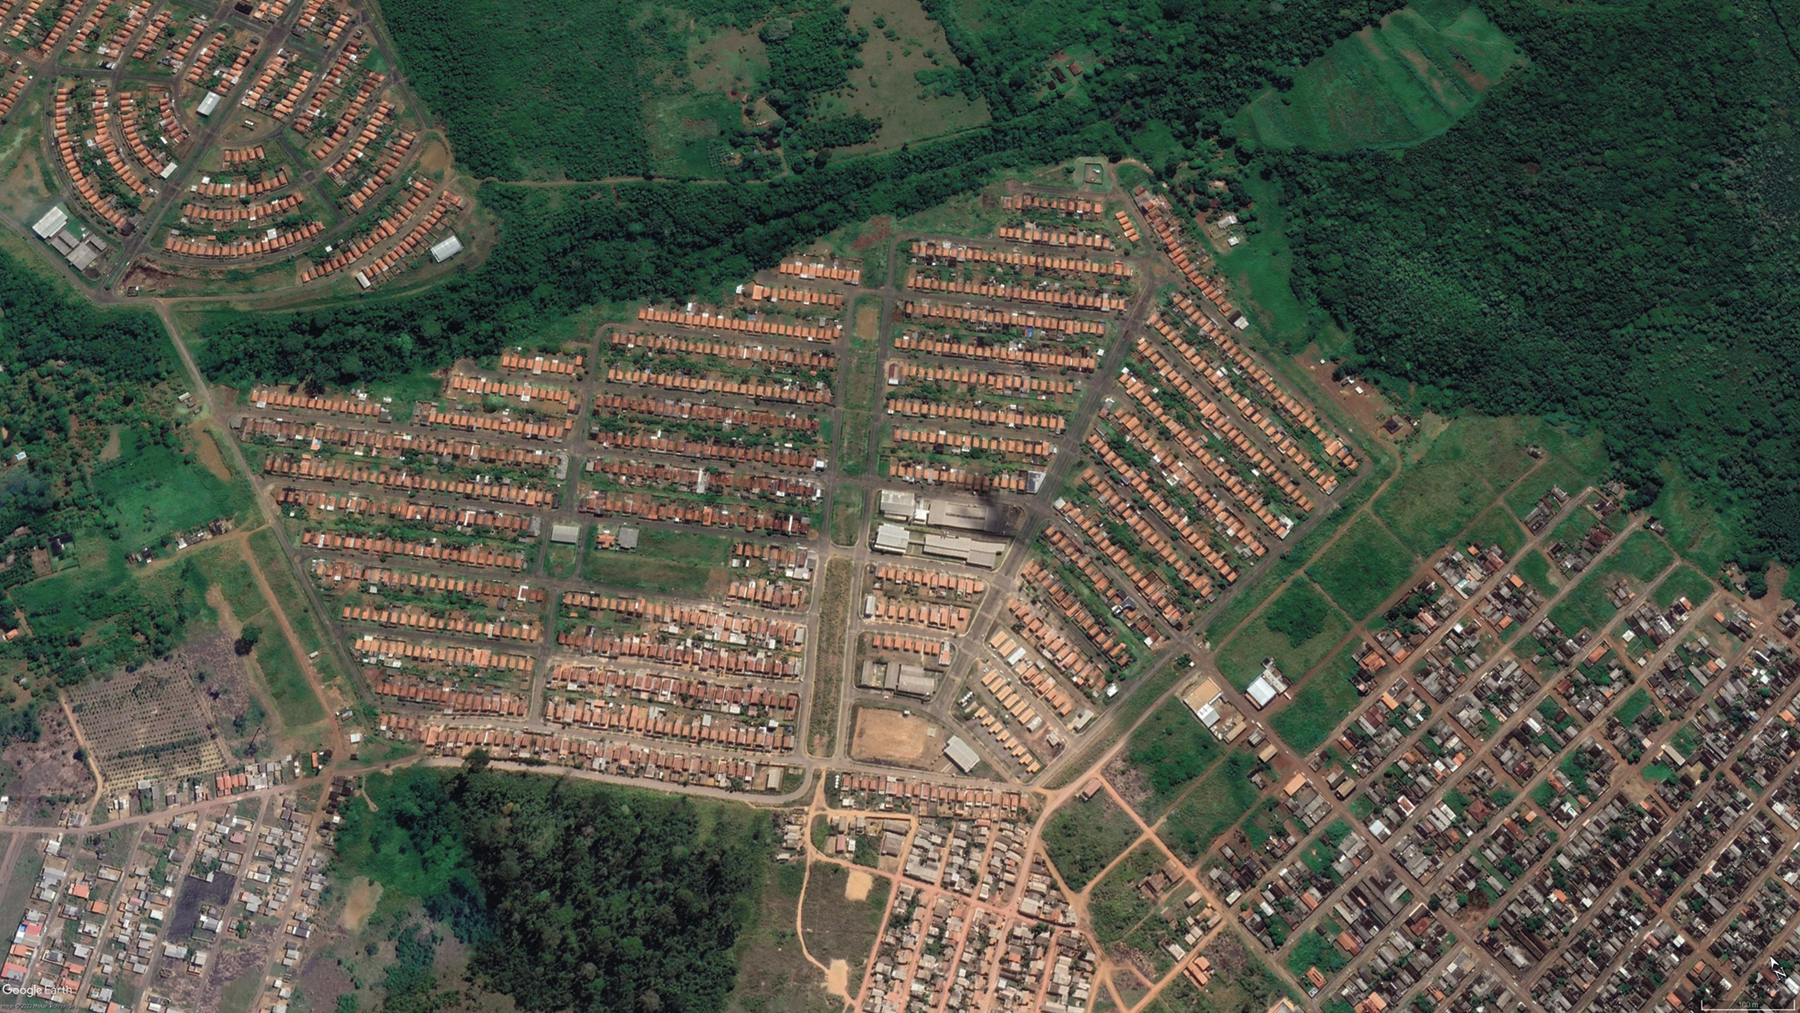 Fotografia. Imagem de satélite com diversas casas e construções dispostas em quarteirões ocupando a área central, sudeste e noroeste. Ao redor há áreas cobertas por vegetação.